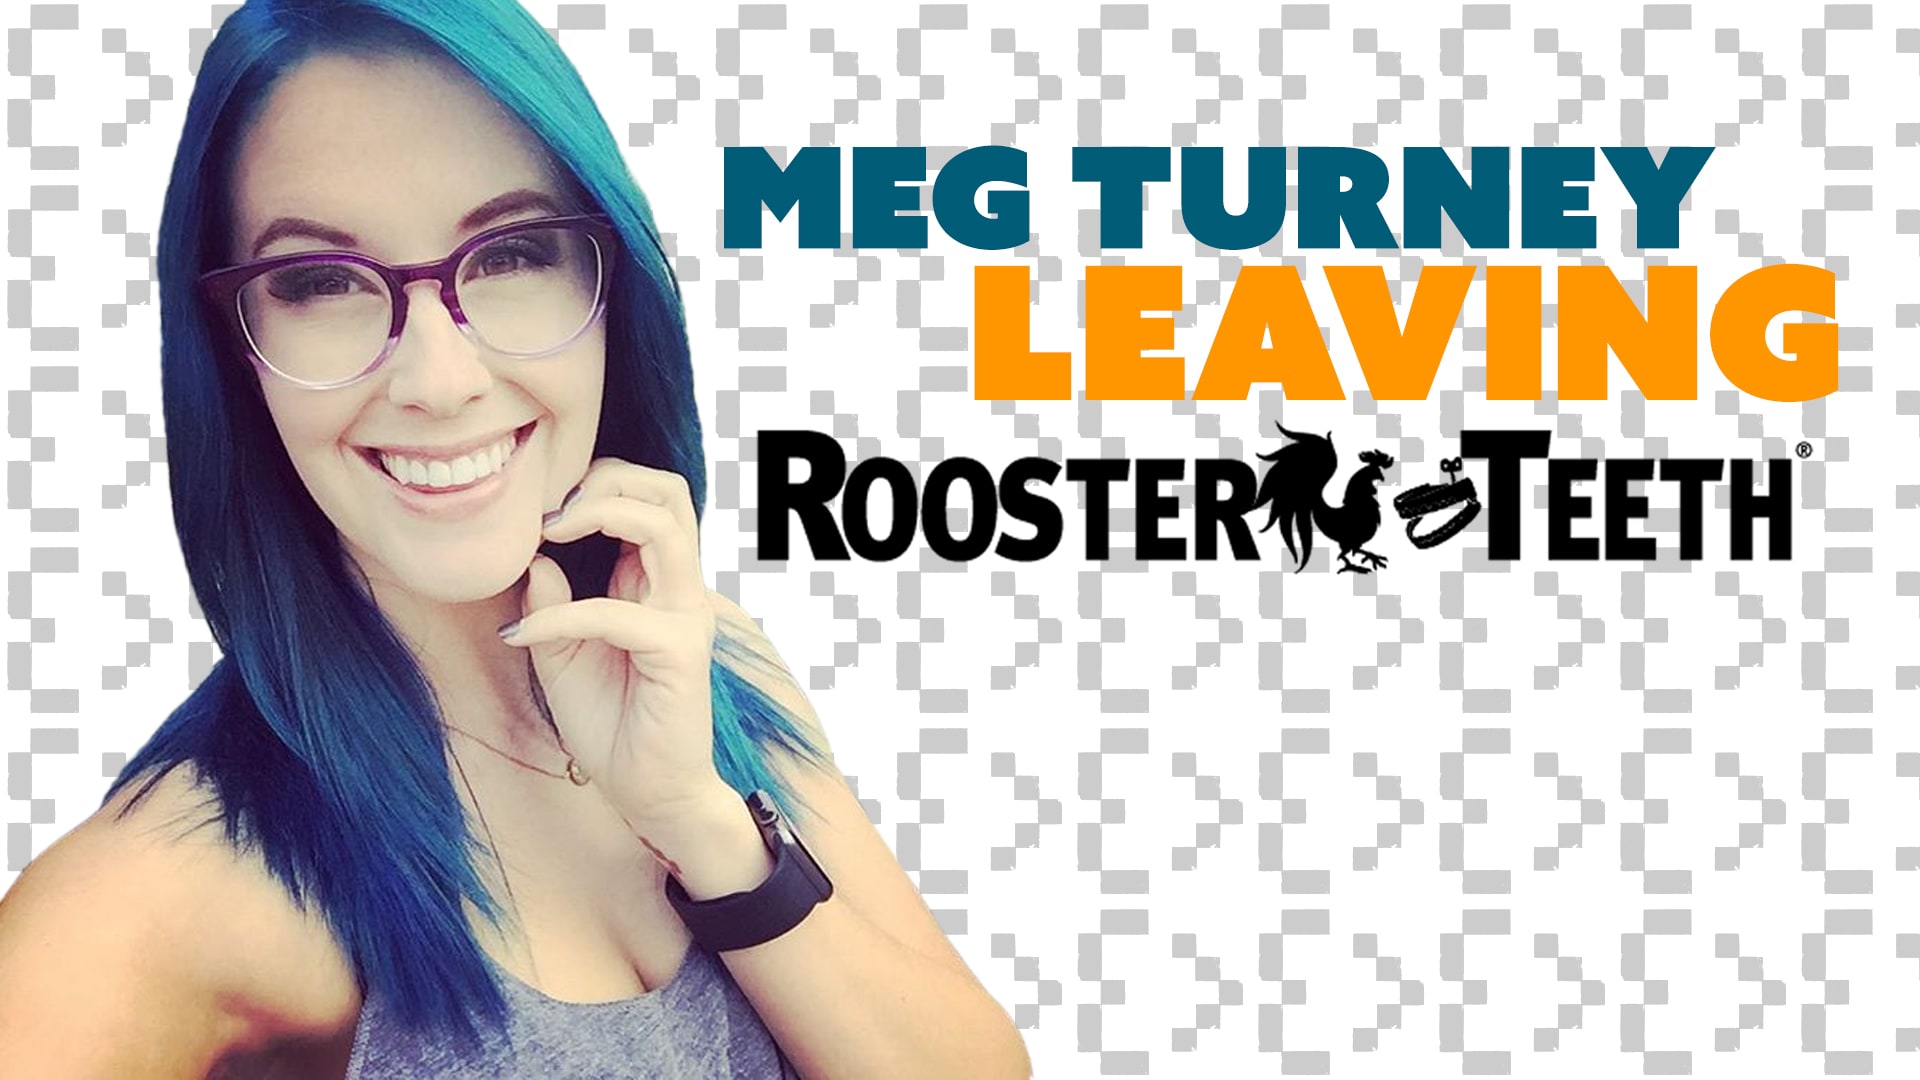 Meg turney leaving rooster teeth